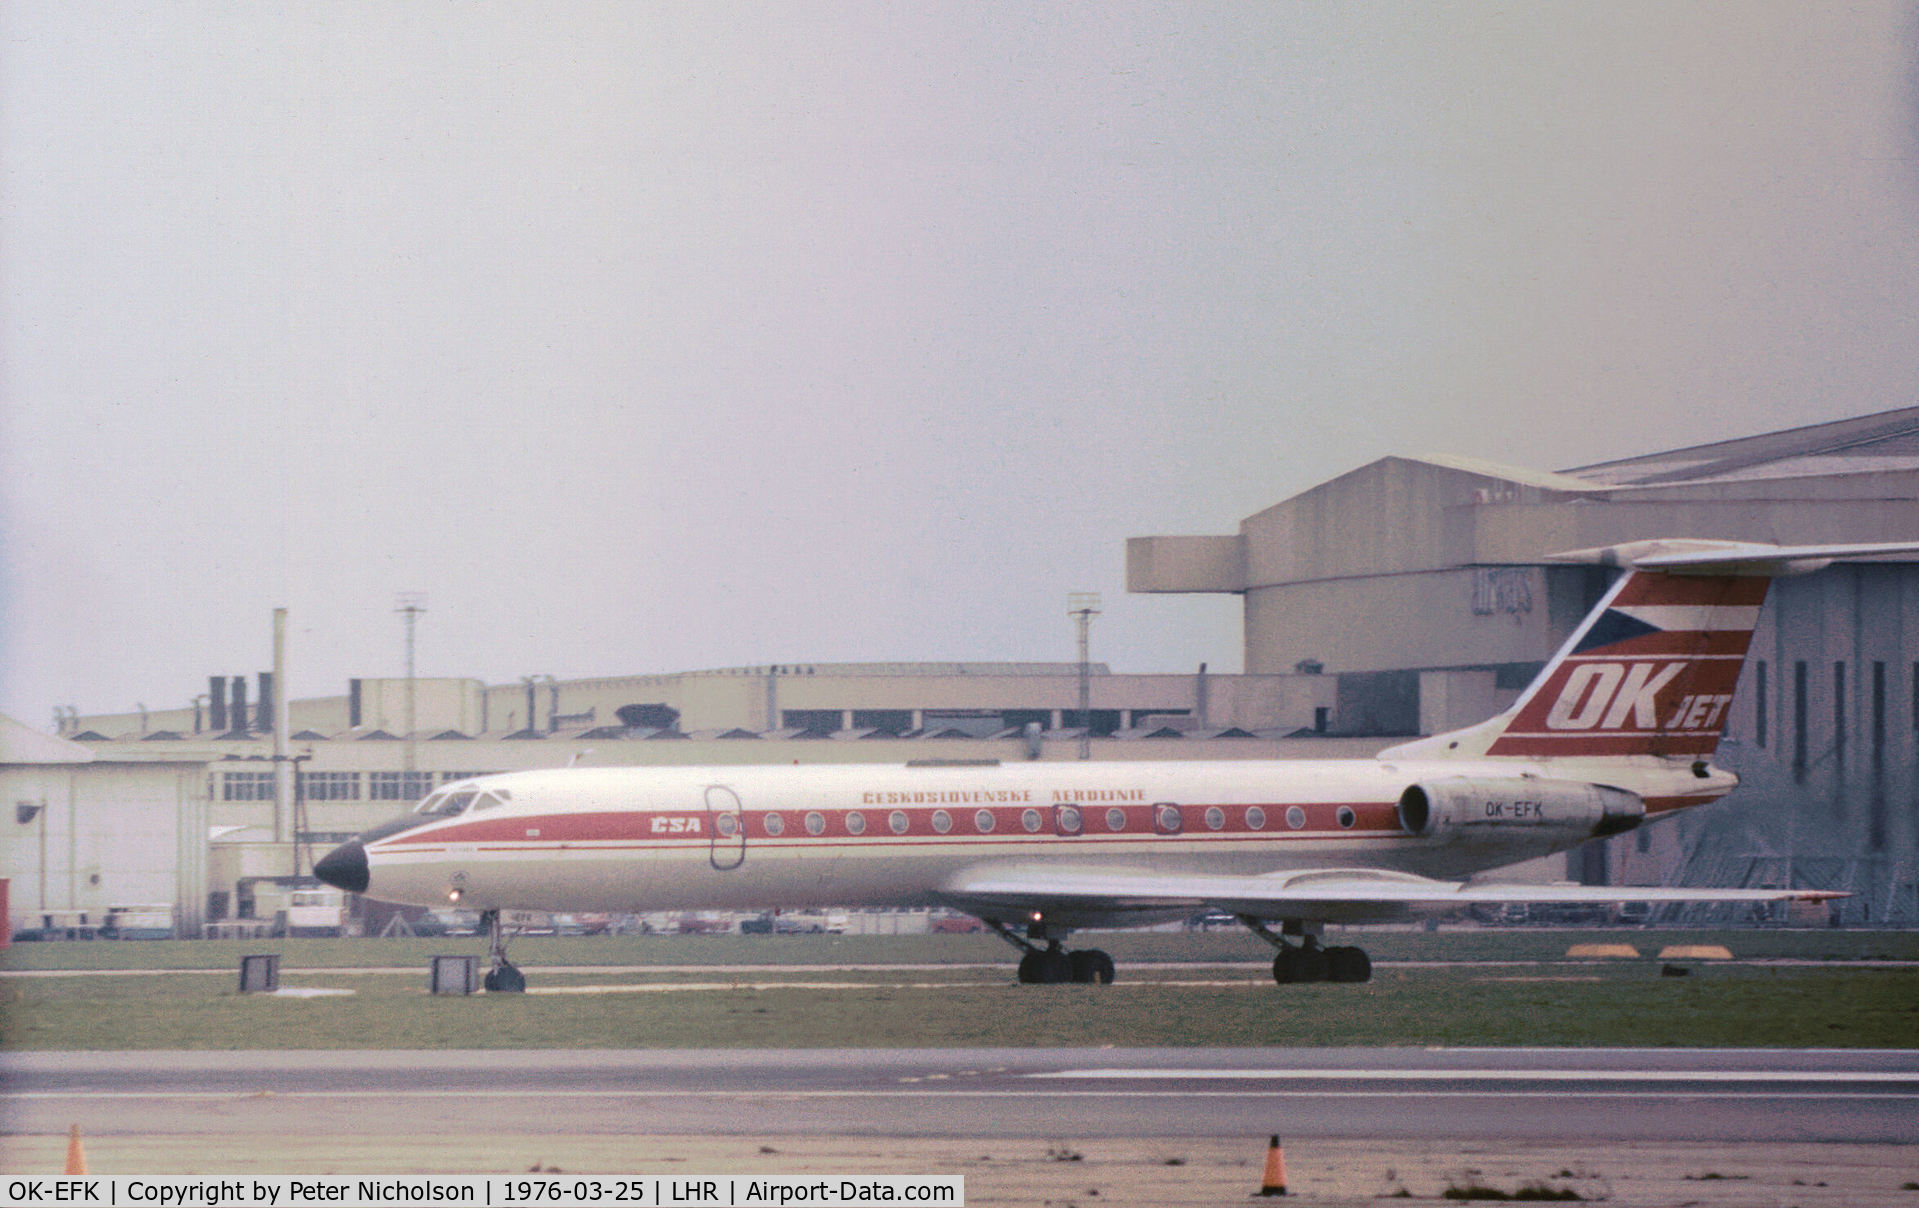 OK-EFK, 1974 Tupolev Tu-134A C/N 4323130, Tu-134A Crusty of Czech airlines CSA at Heathrow in March 1976.